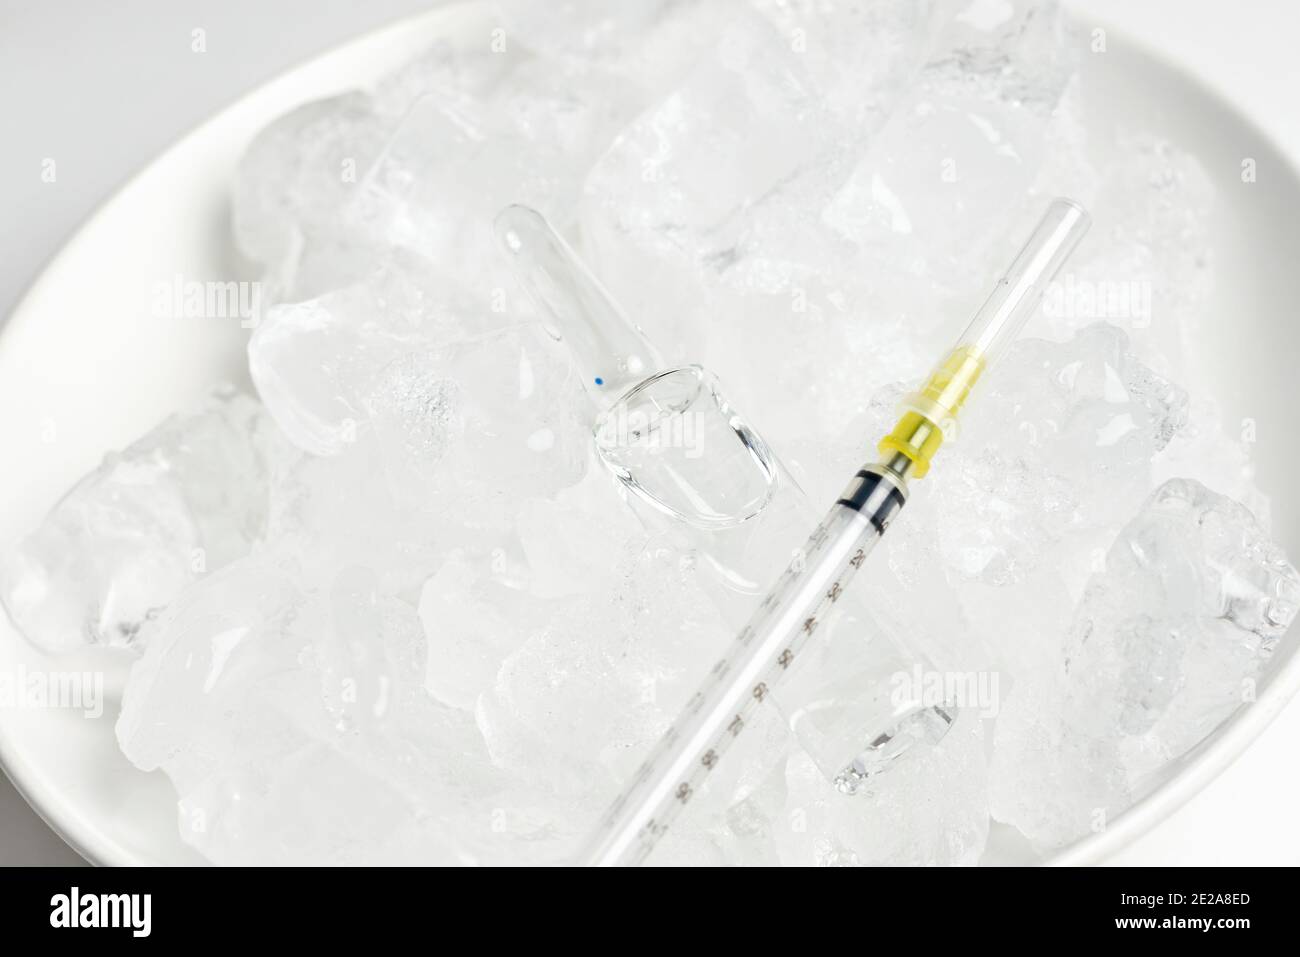 Kühlschrank zur Lagerung von Impfstoffen. Fläschchen auf dem Eis. Langfristige Lagerung des Covid-19-Impfstoffs. Coronavirus-Impffläschchen werden in extremer Kühllagerung aufbewahrt Stockfoto